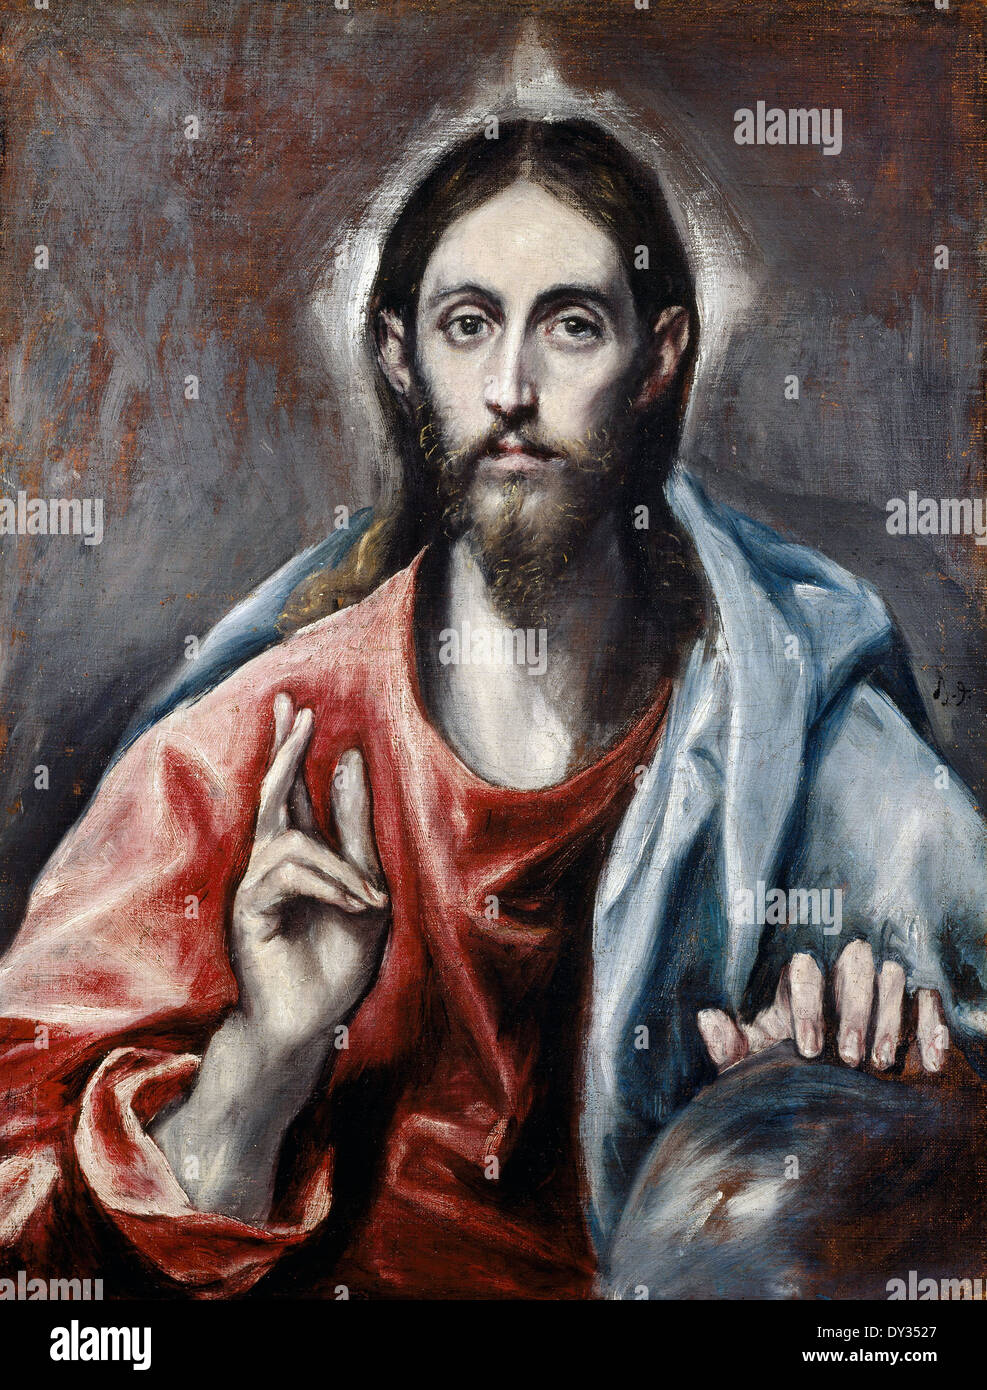 El Greco, le Christ bénissant (le Sauveur du monde) 1600 Huile sur toile. Scottish National Gallery, Édimbourg. Banque D'Images